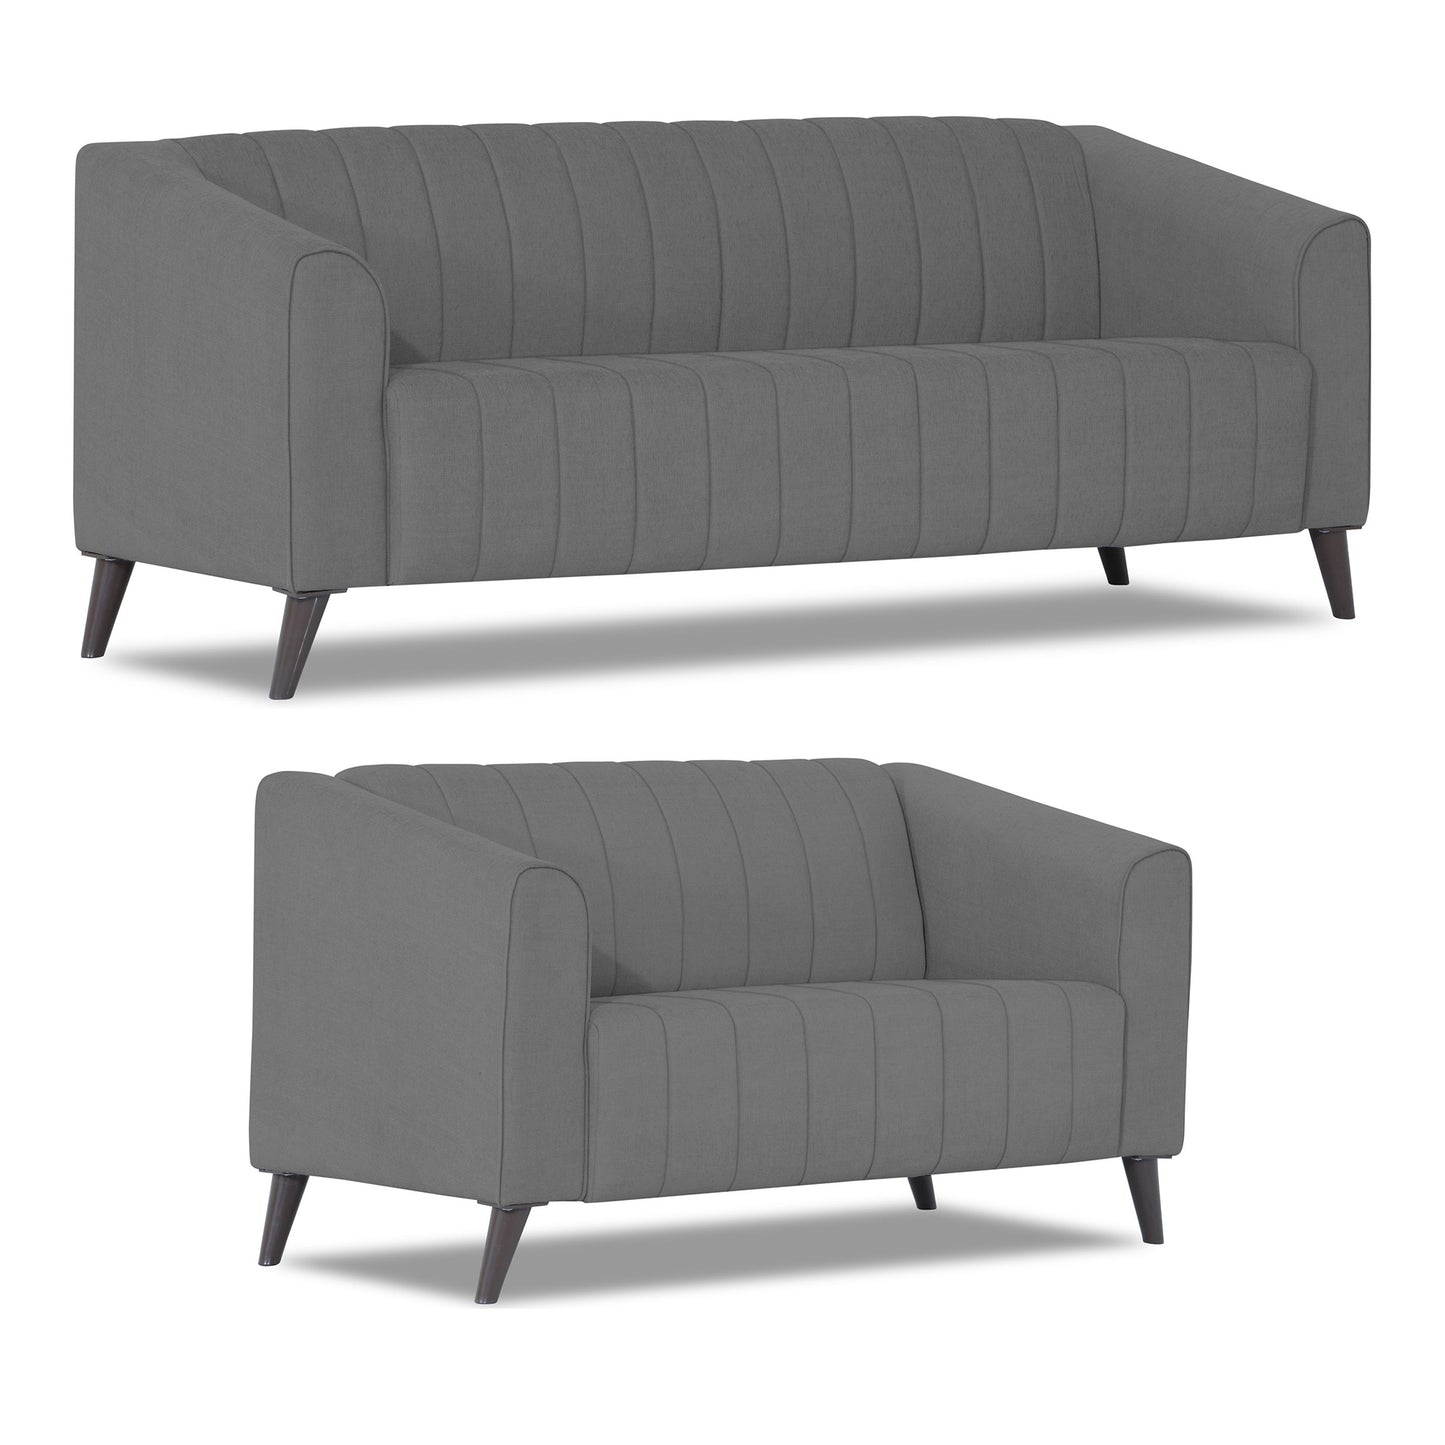 Adorn India Premium Laurel 3+2 5 Seater Sofa Set (Grey)